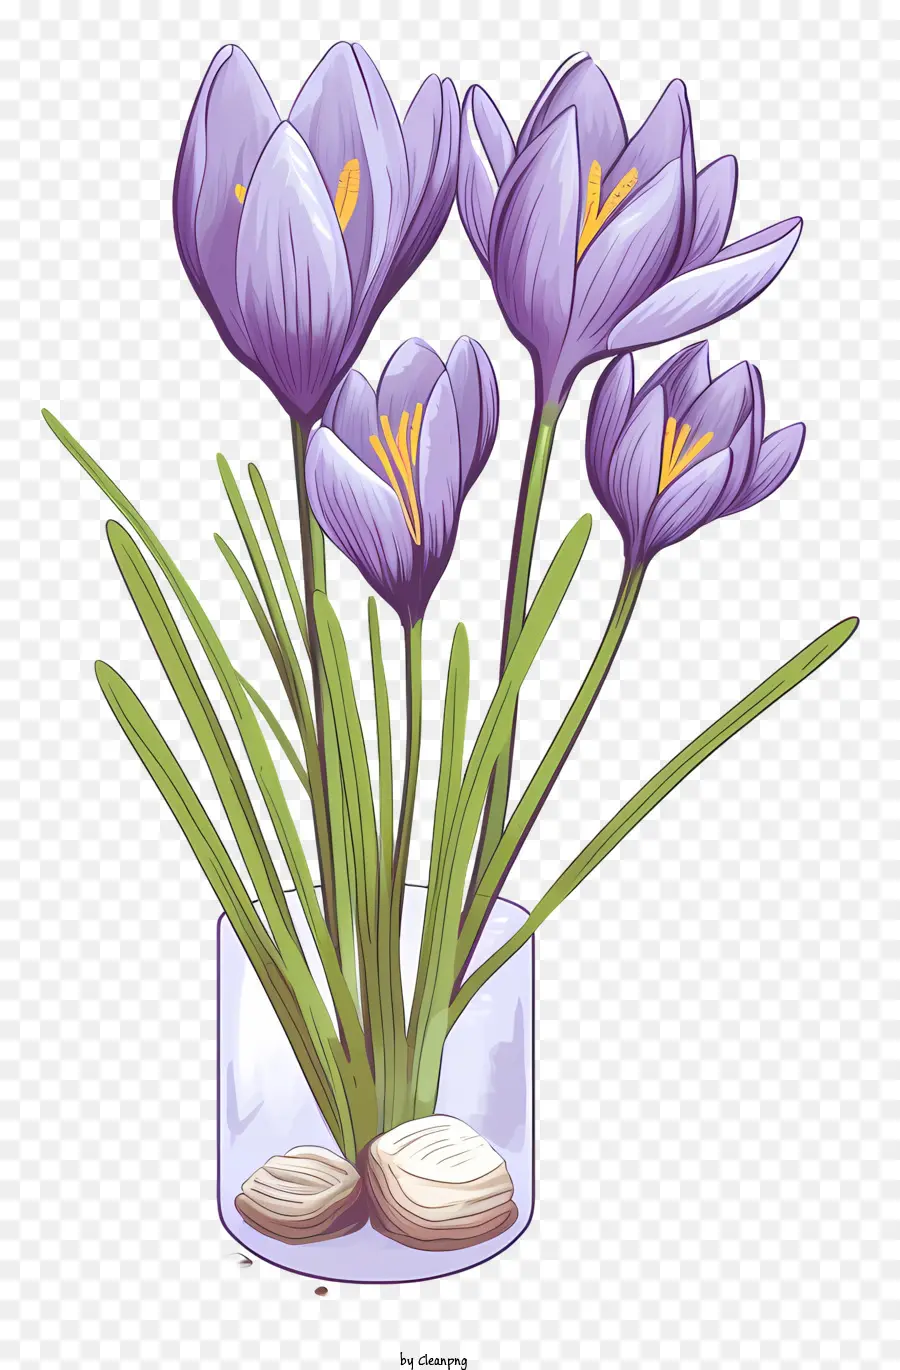 vase purple crocuses black background symmetrical arrangement square format